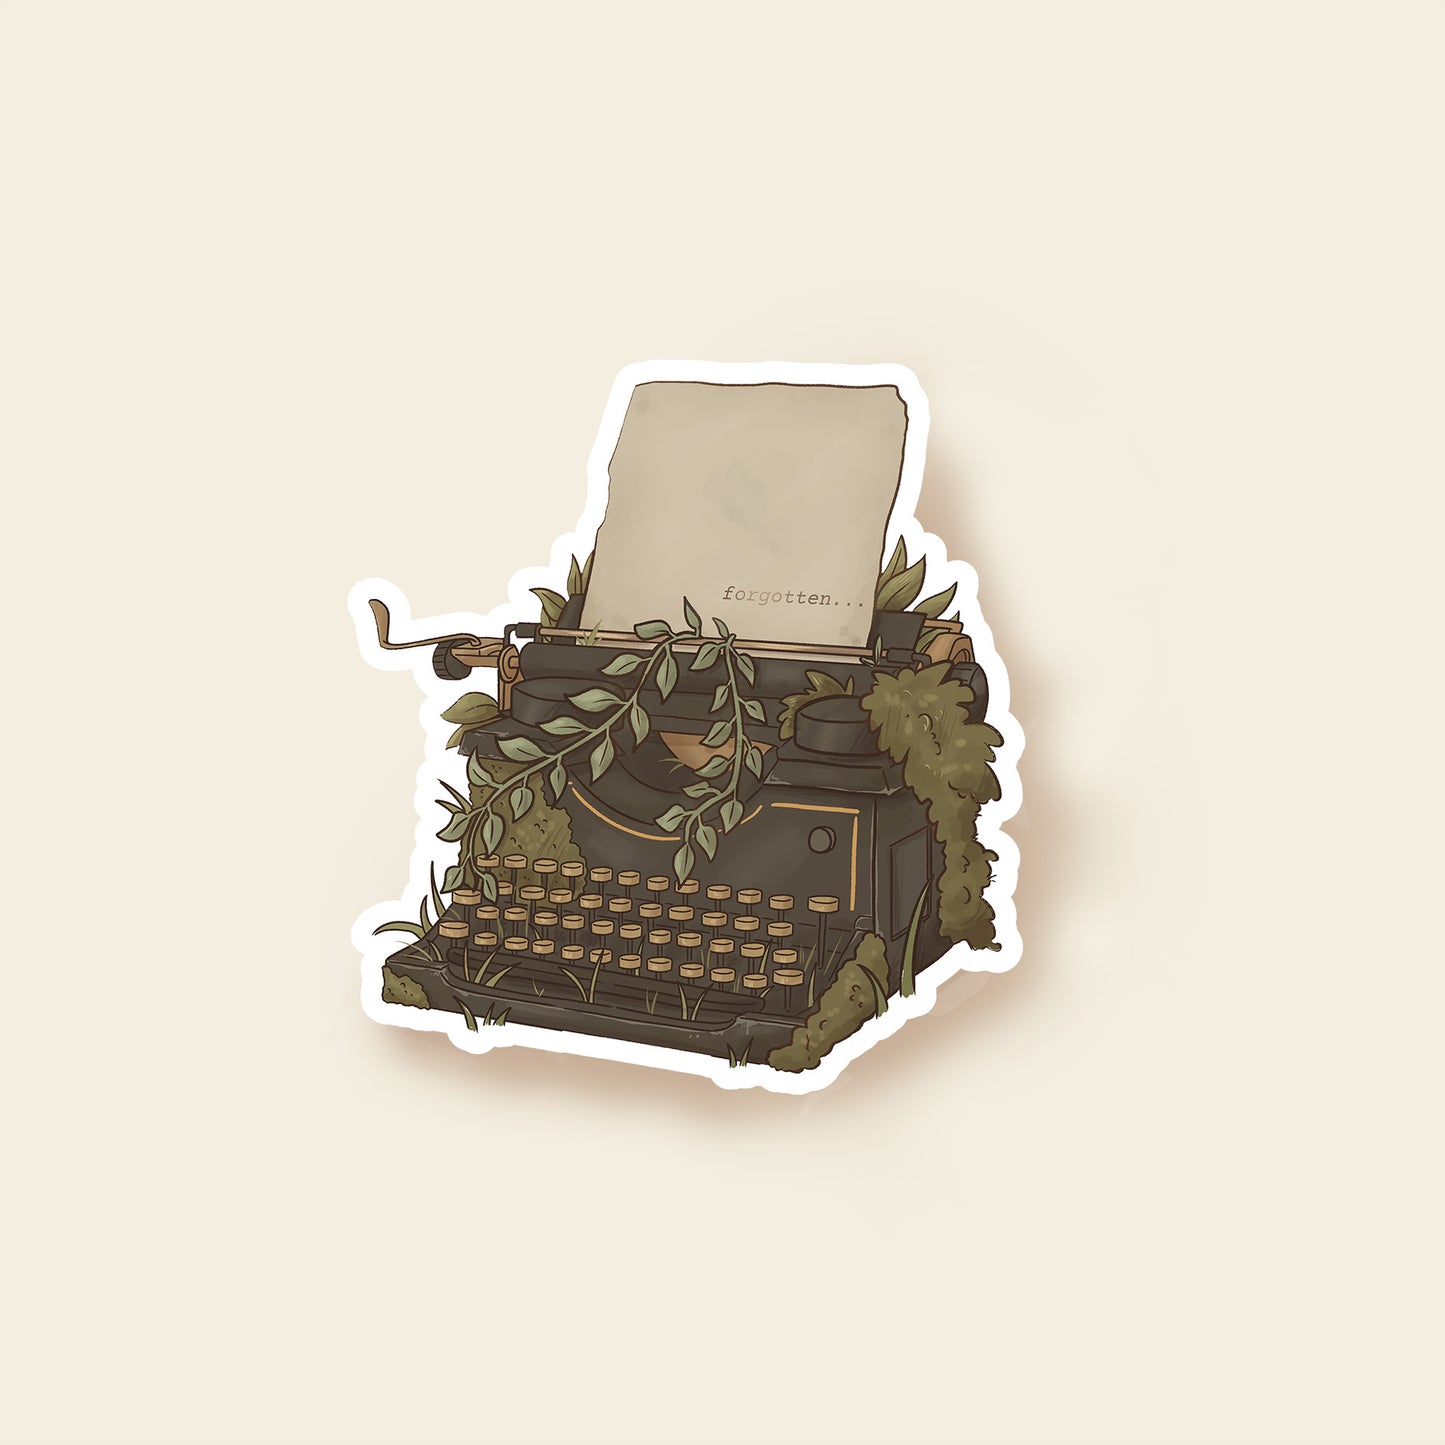 The Forgotten Typewriter - Sticker